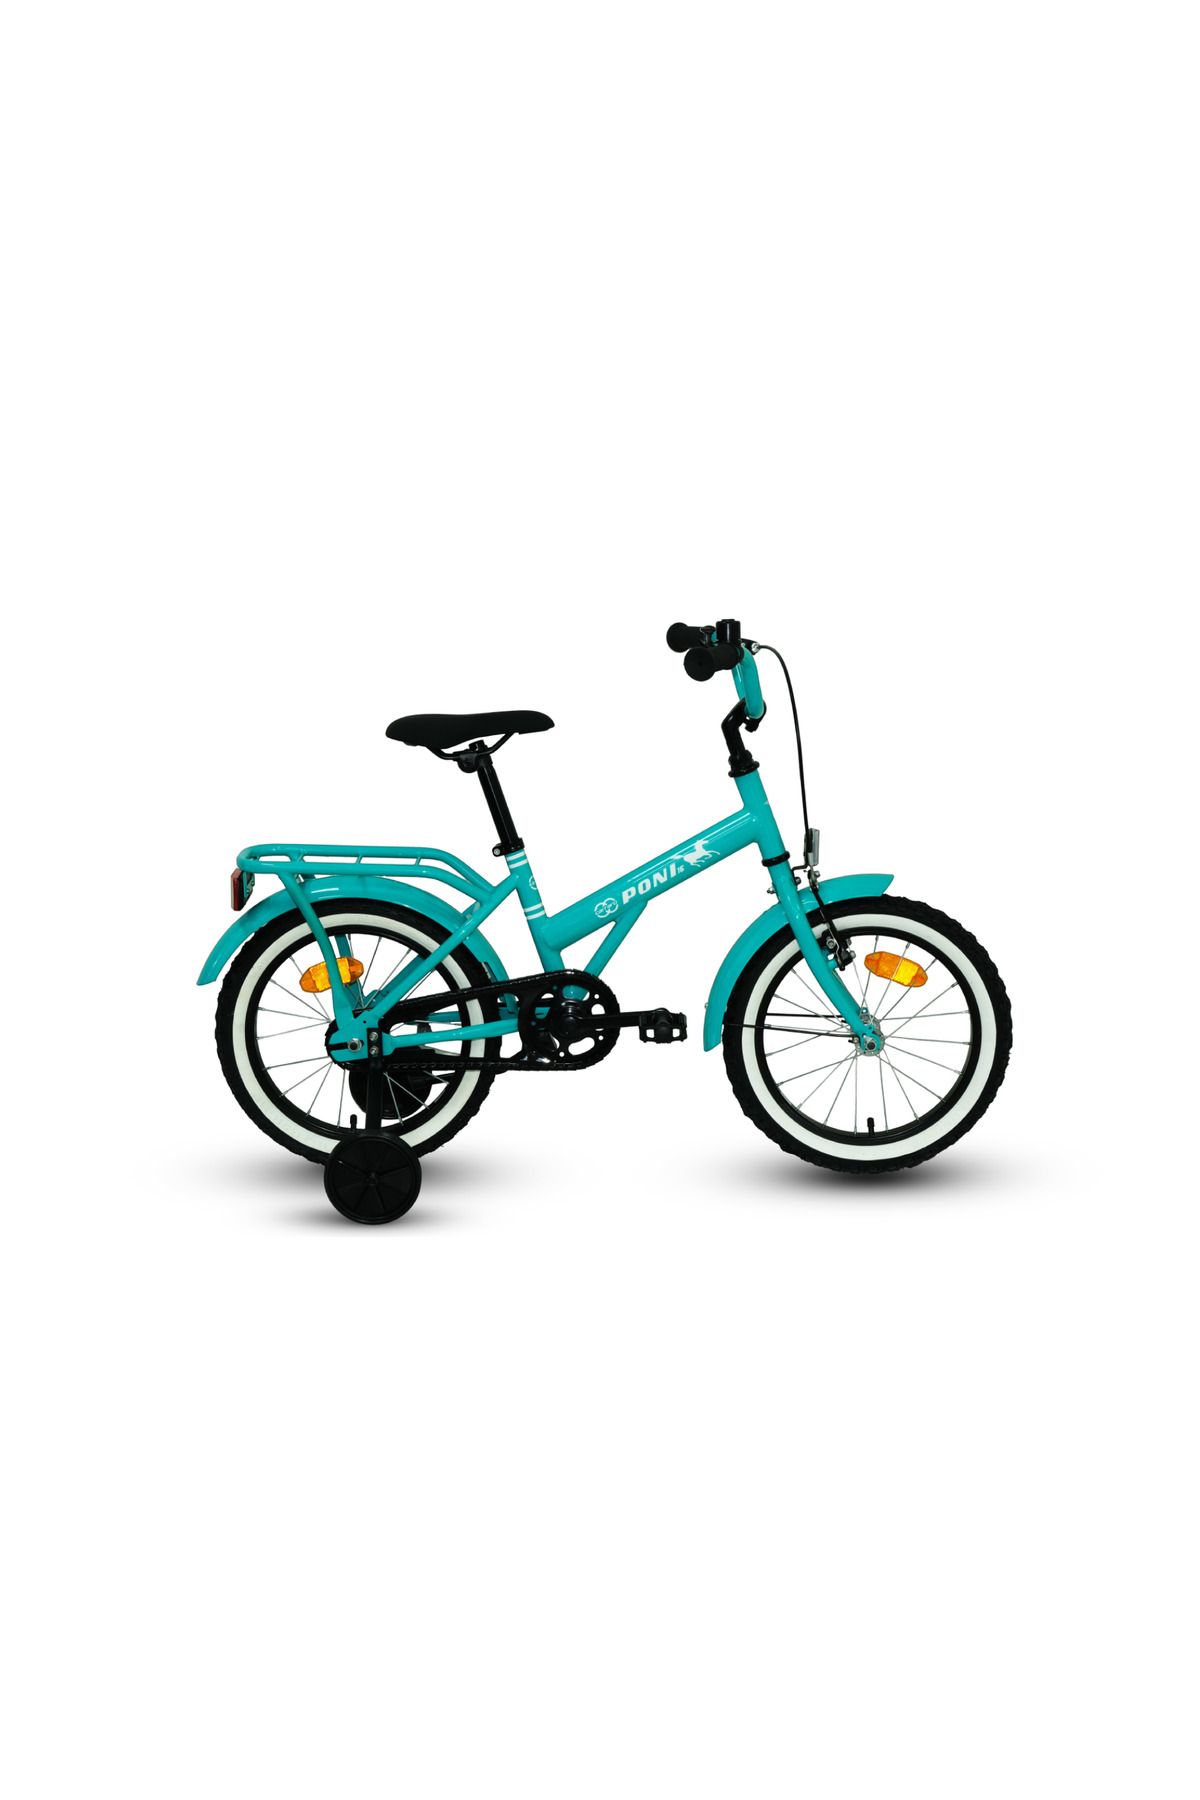 Carraro Poni 16 16 Jant Çocuk Bisikleti Unisex Mavi VE YEŞİL yeşil